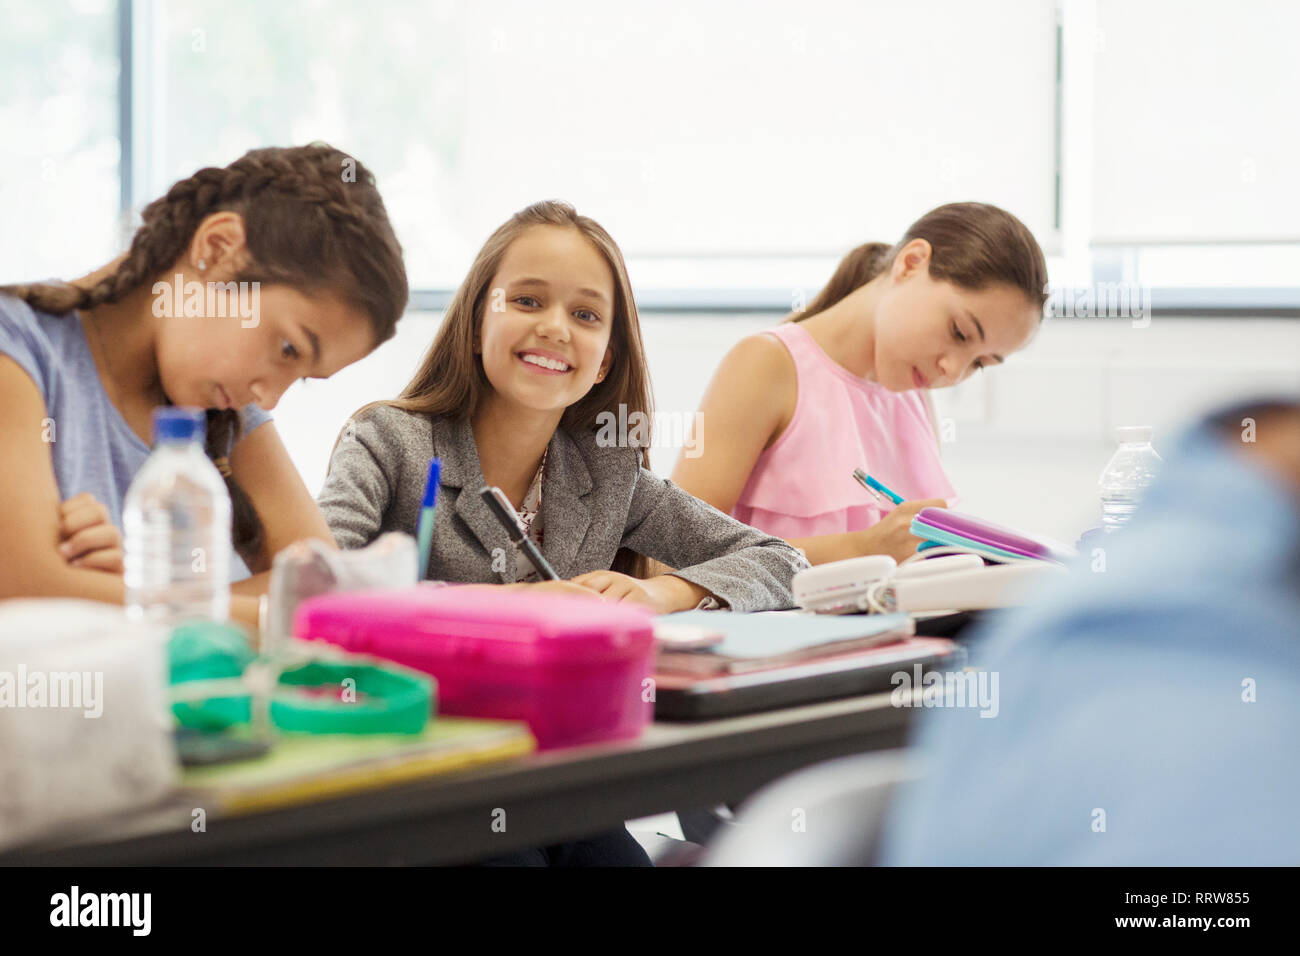 Porträt Lächeln, zuversichtlich Junior high school Mädchen Schüler studieren im Klassenzimmer Stockfoto